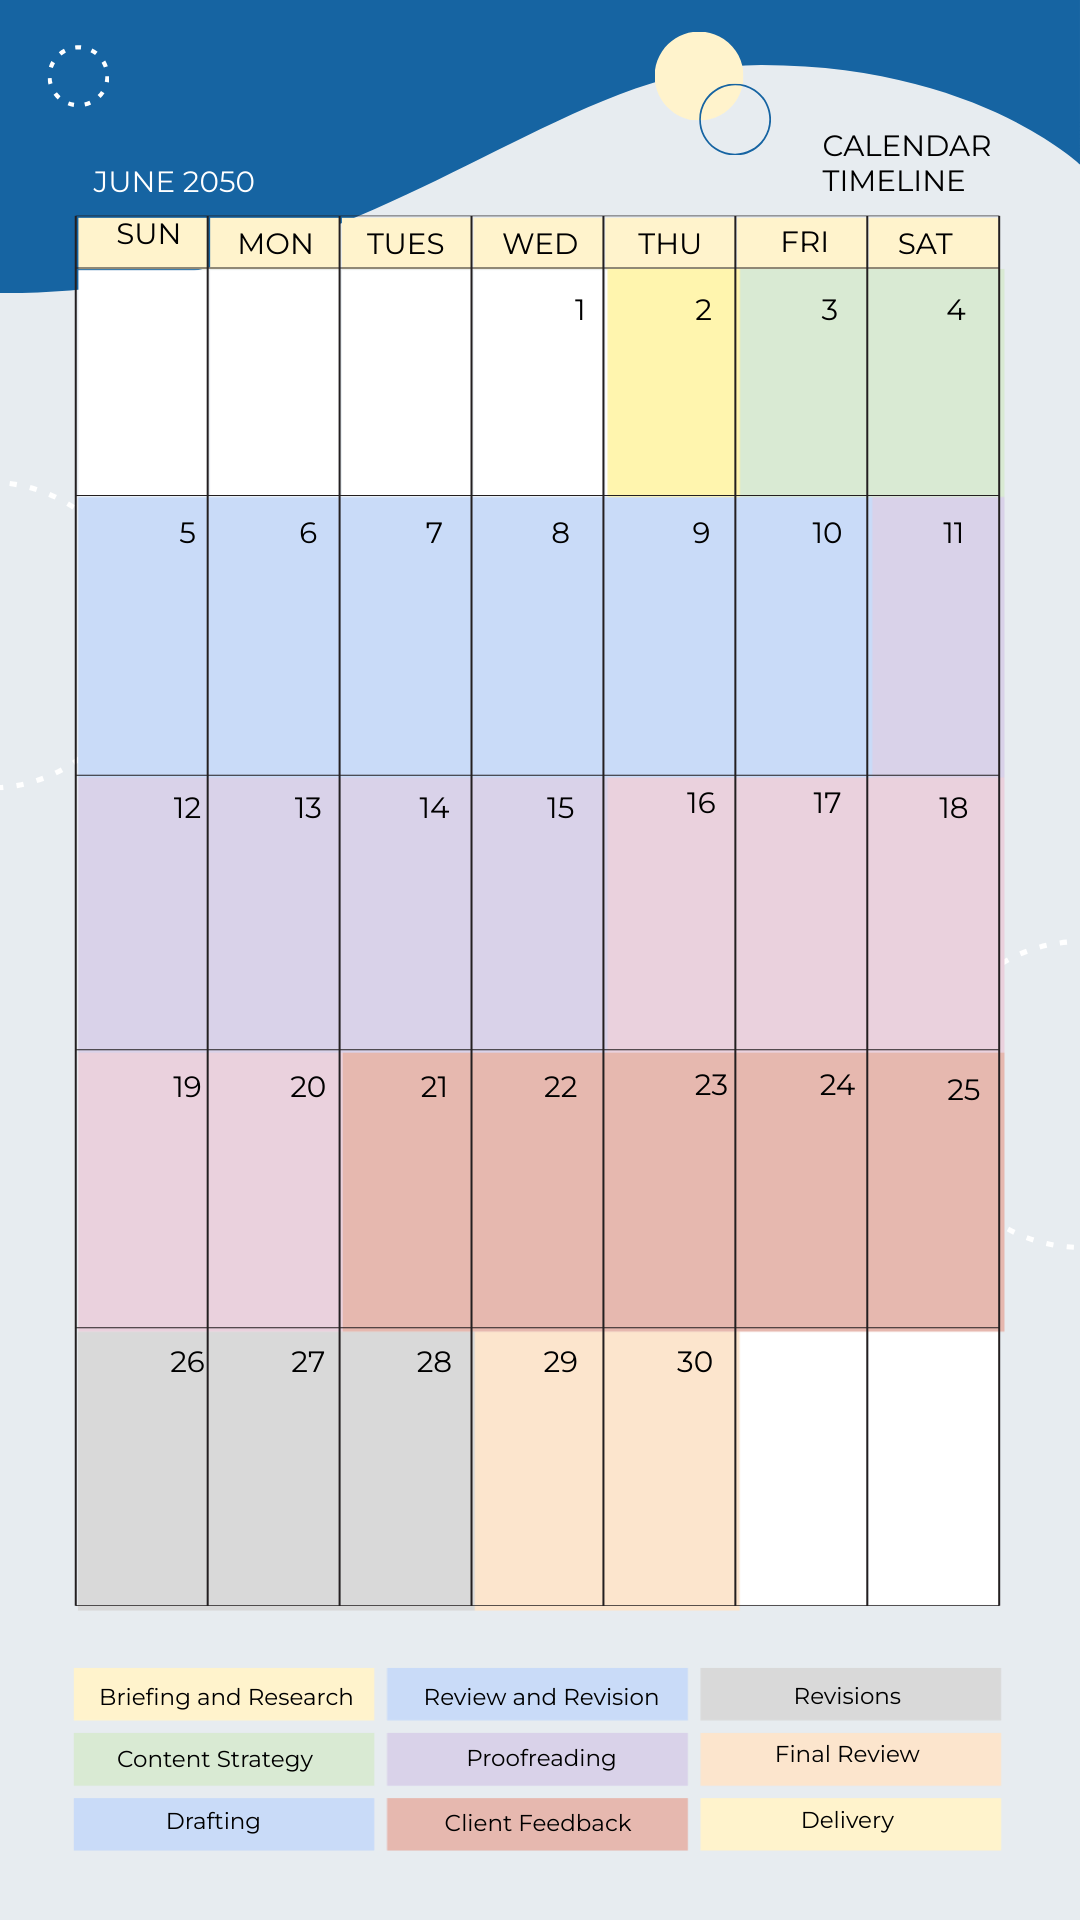 Calendar Timeline